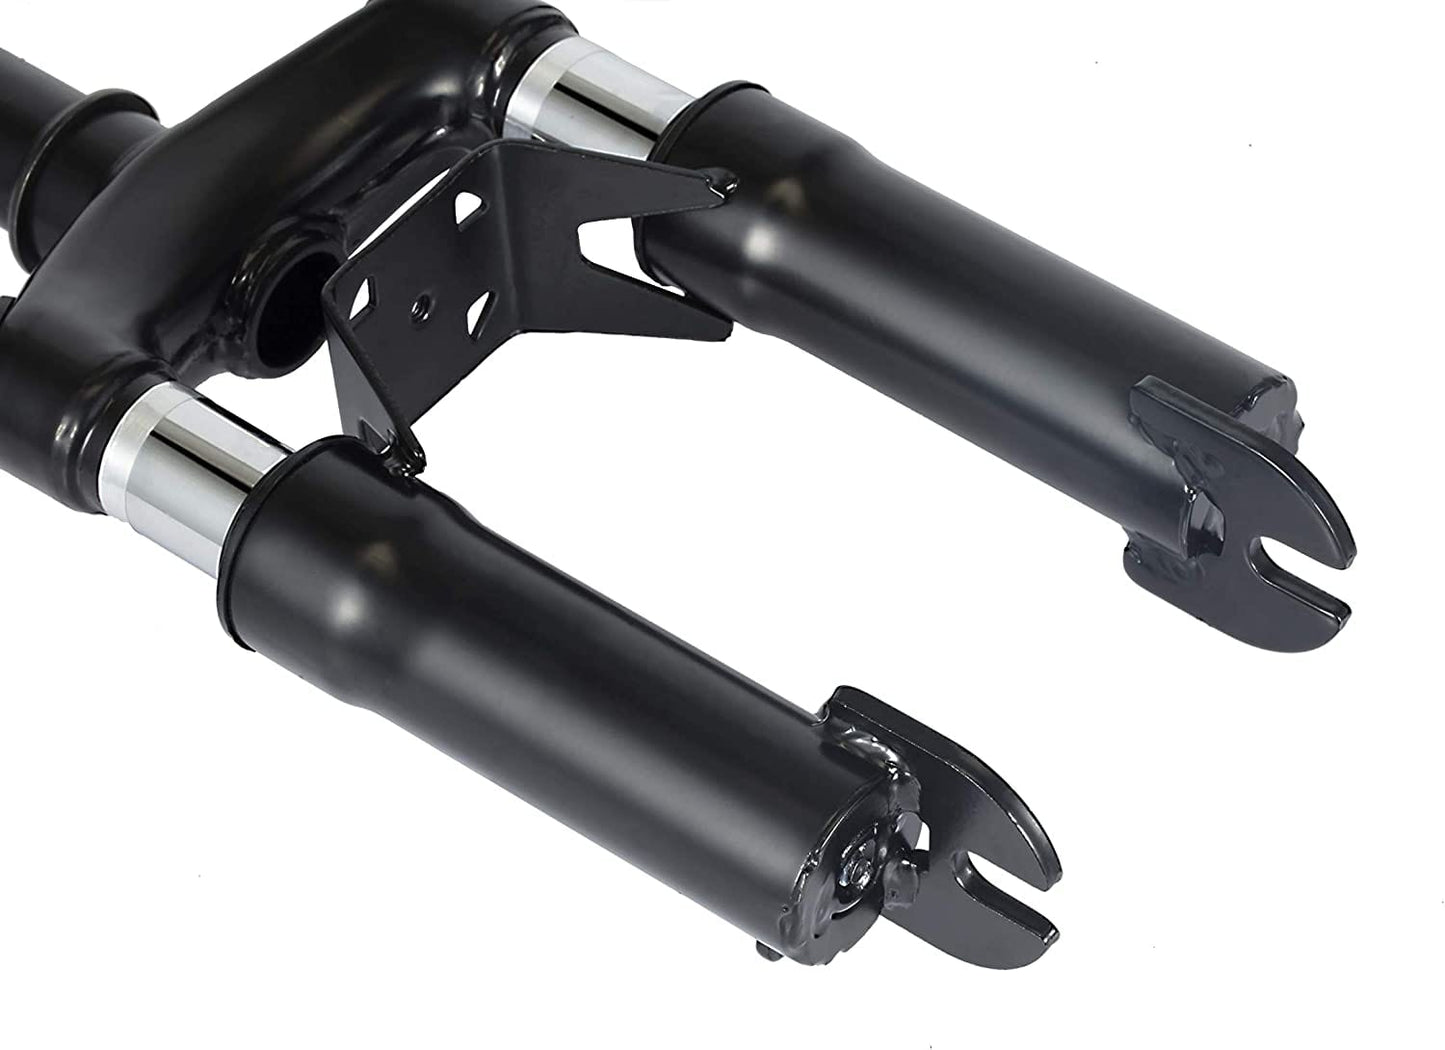 Främre gaffelstötdämpare Ninebot G30 hakar | Förbättra körupplevelsen. Material stål + ABS i svart färg | Wheely Shop